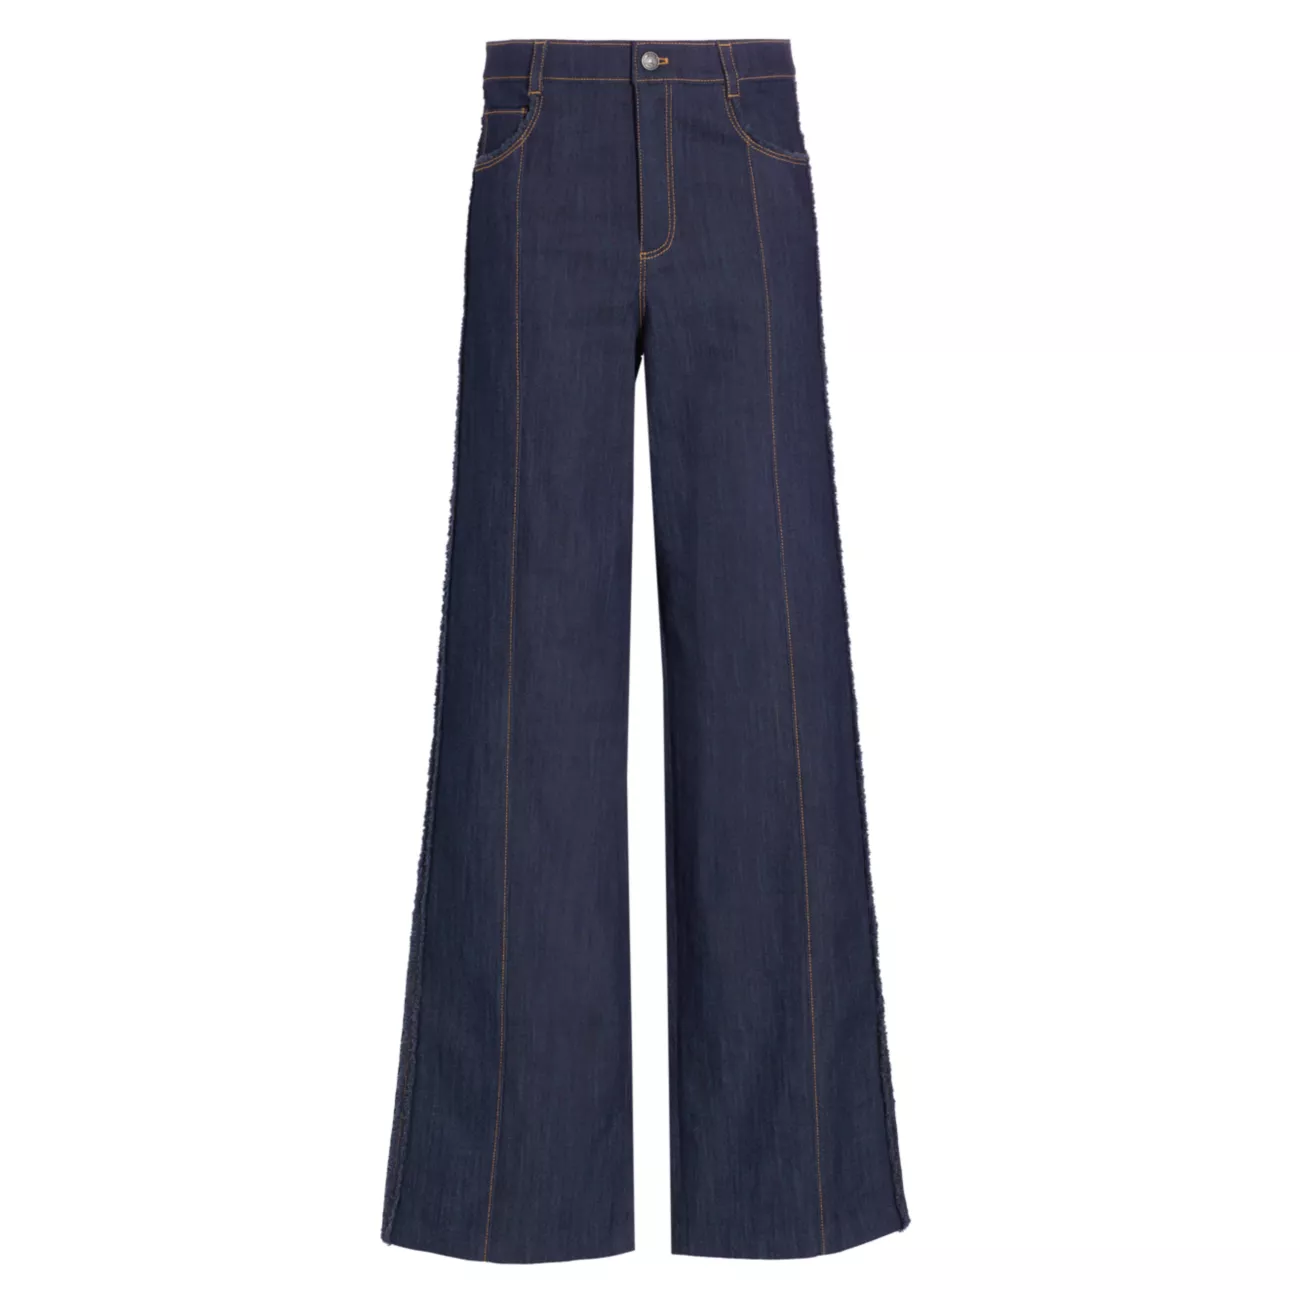 Эластичные прямые джинсы Francine с высокой посадкой Cinq a Sept